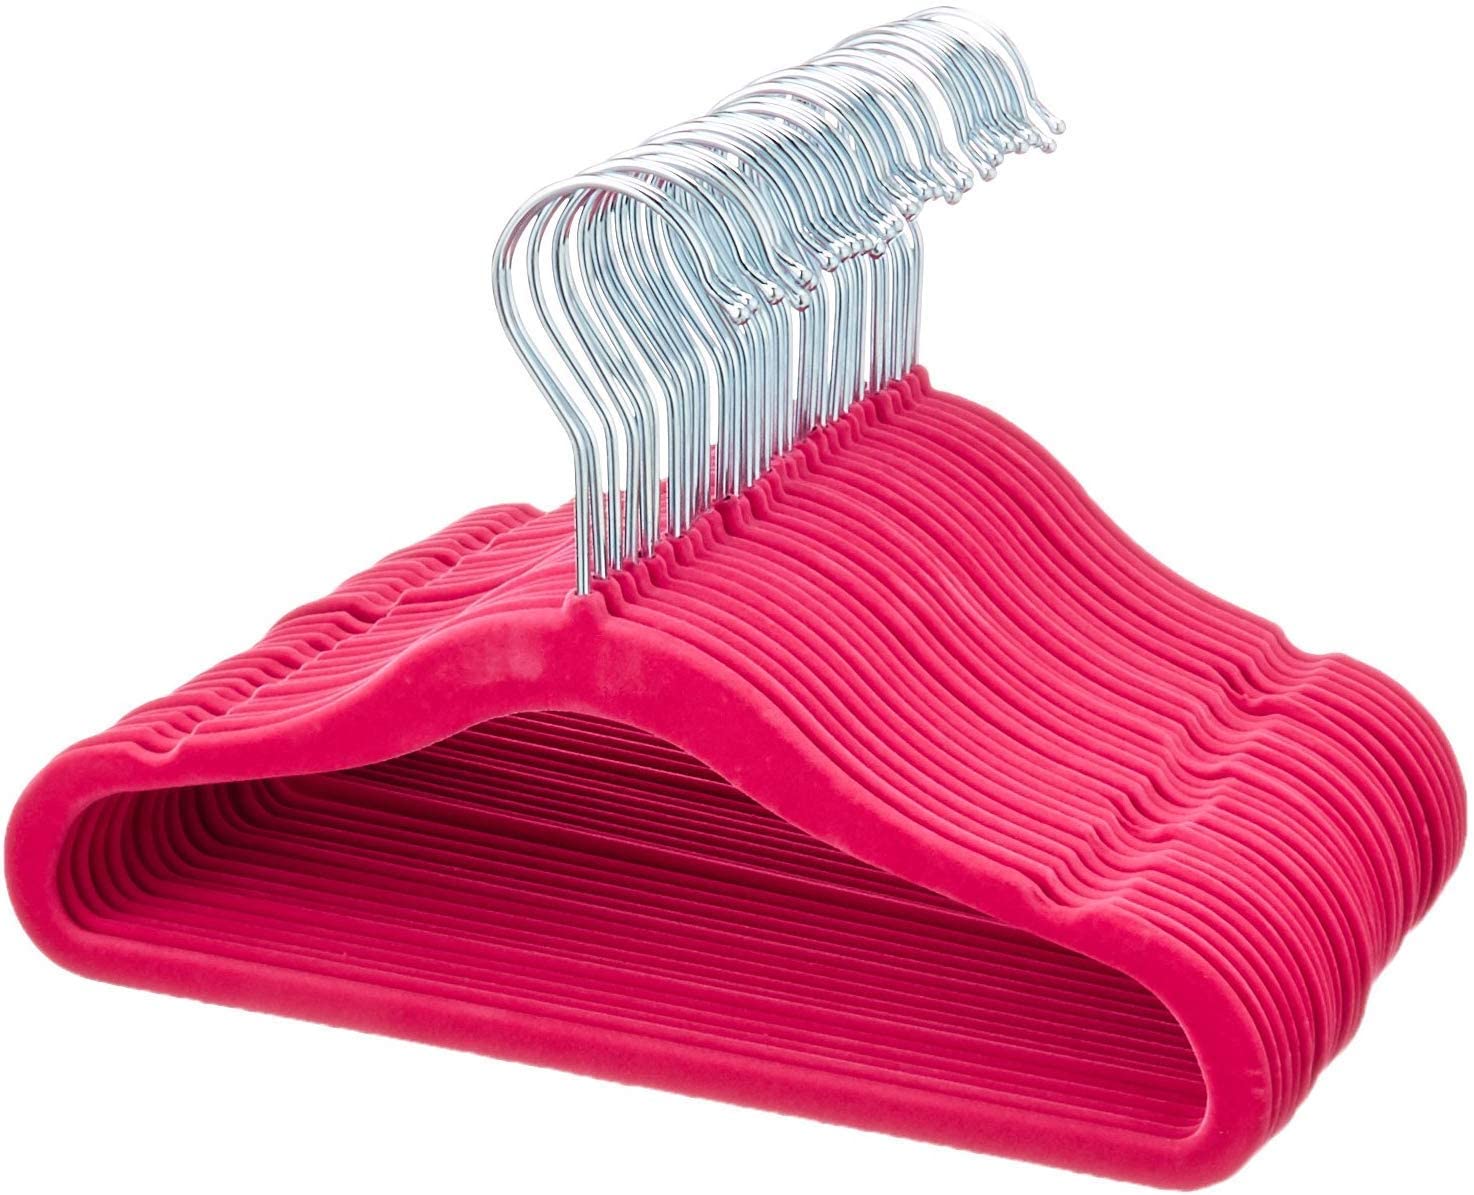 AmazonBasics Velvet Cover Childrens Hanger, Pack of 30, Pink